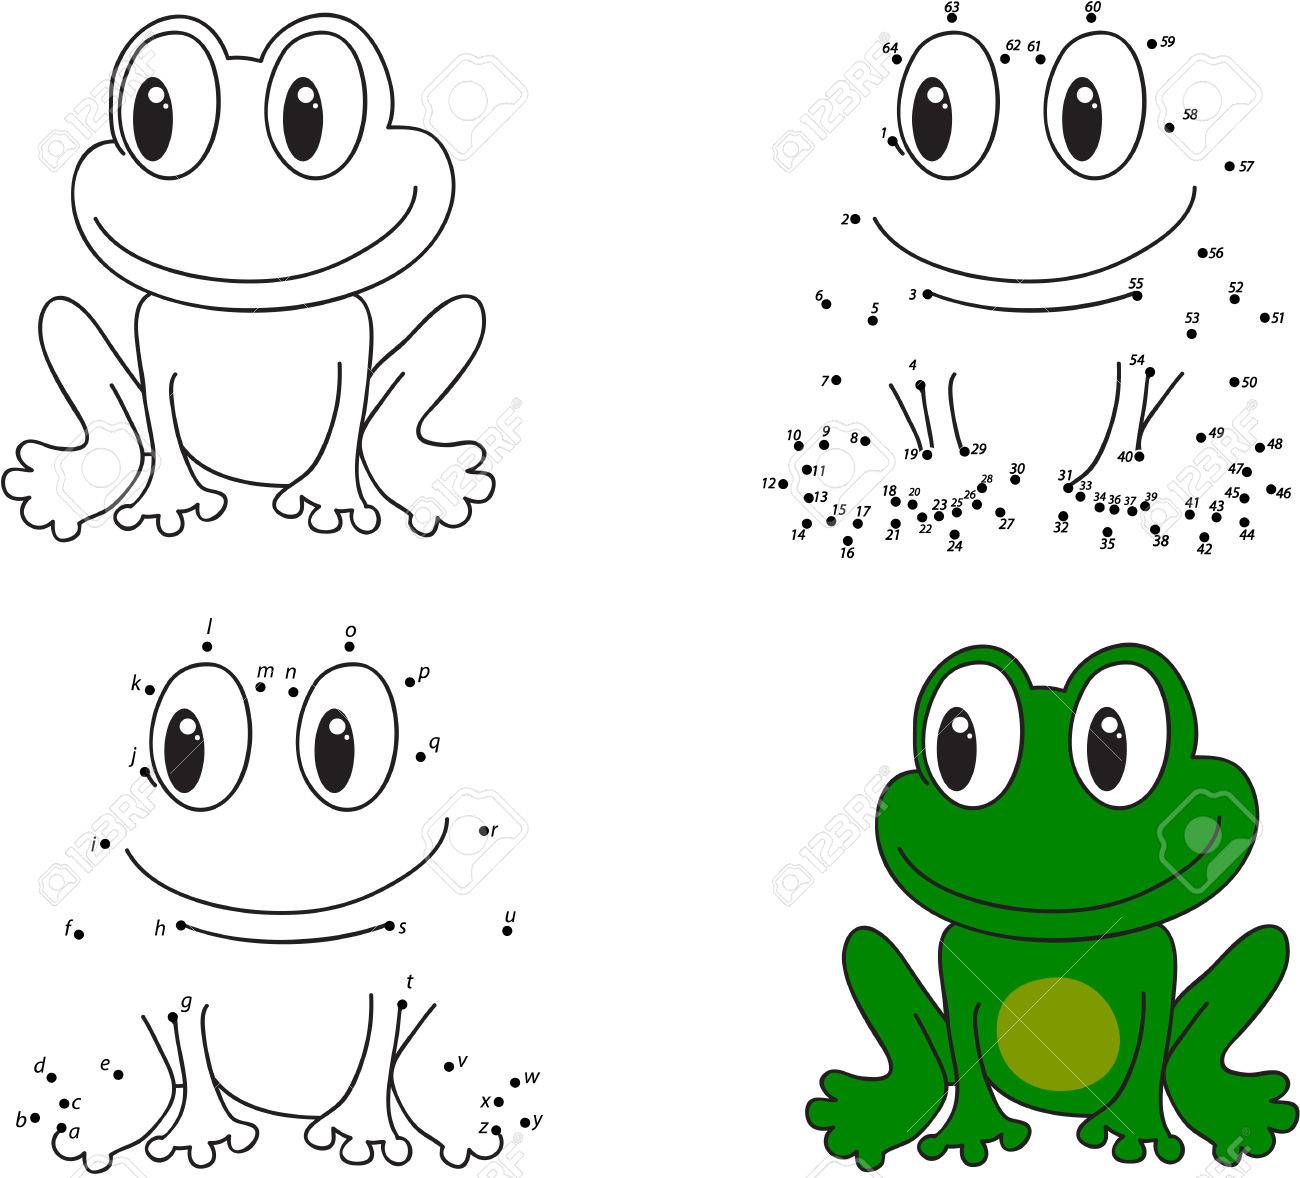 Лягушка рисунок для детей по частям